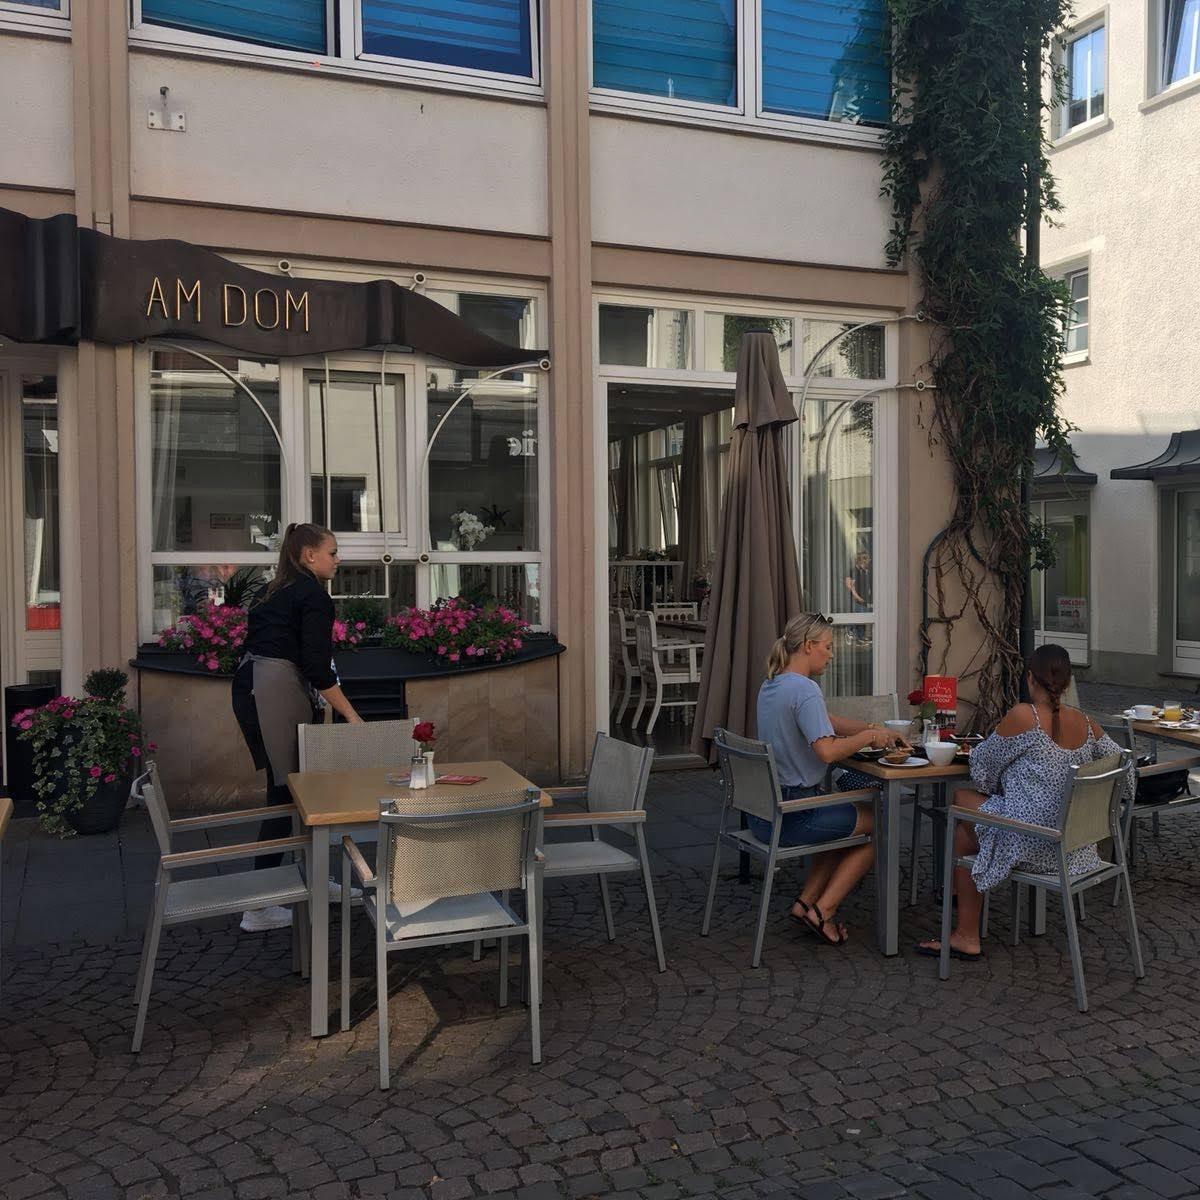 Restaurant "Kaffeehaus und Restaurant am Dom" in Attendorn